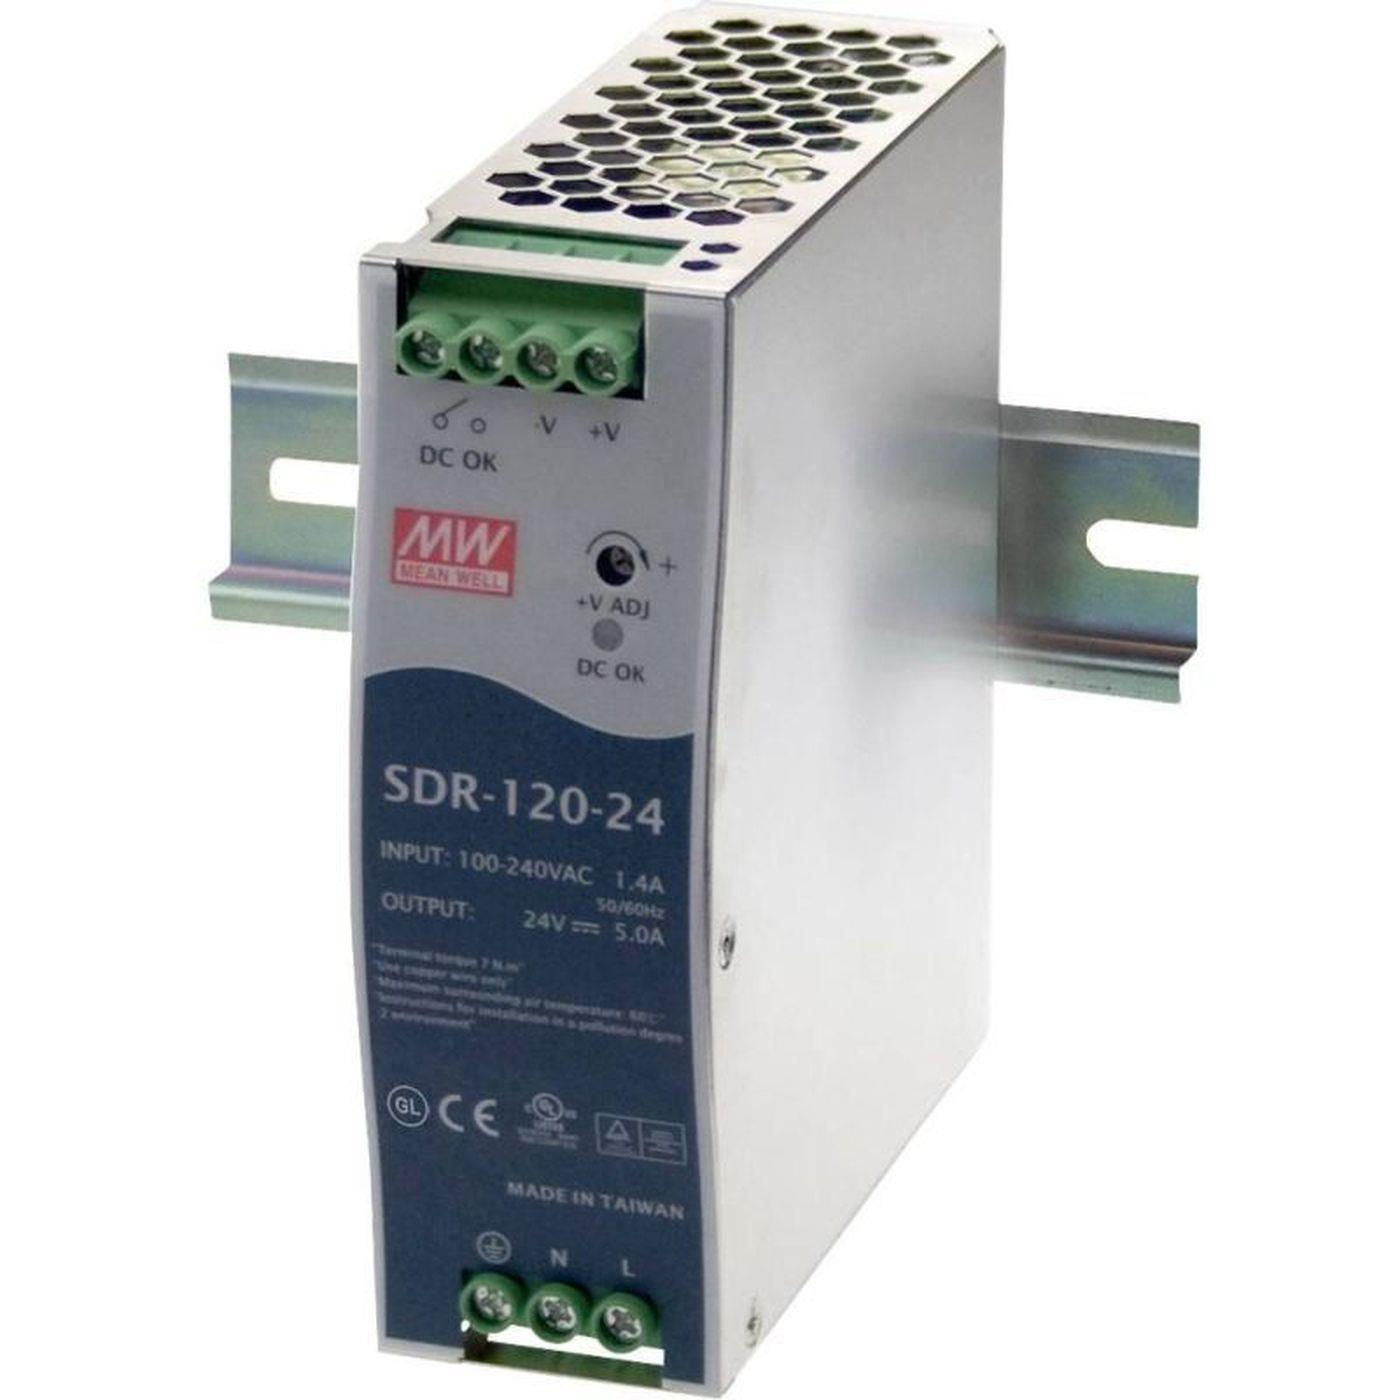 SDR-120-24 120W 24V 5A Din Rail power supply